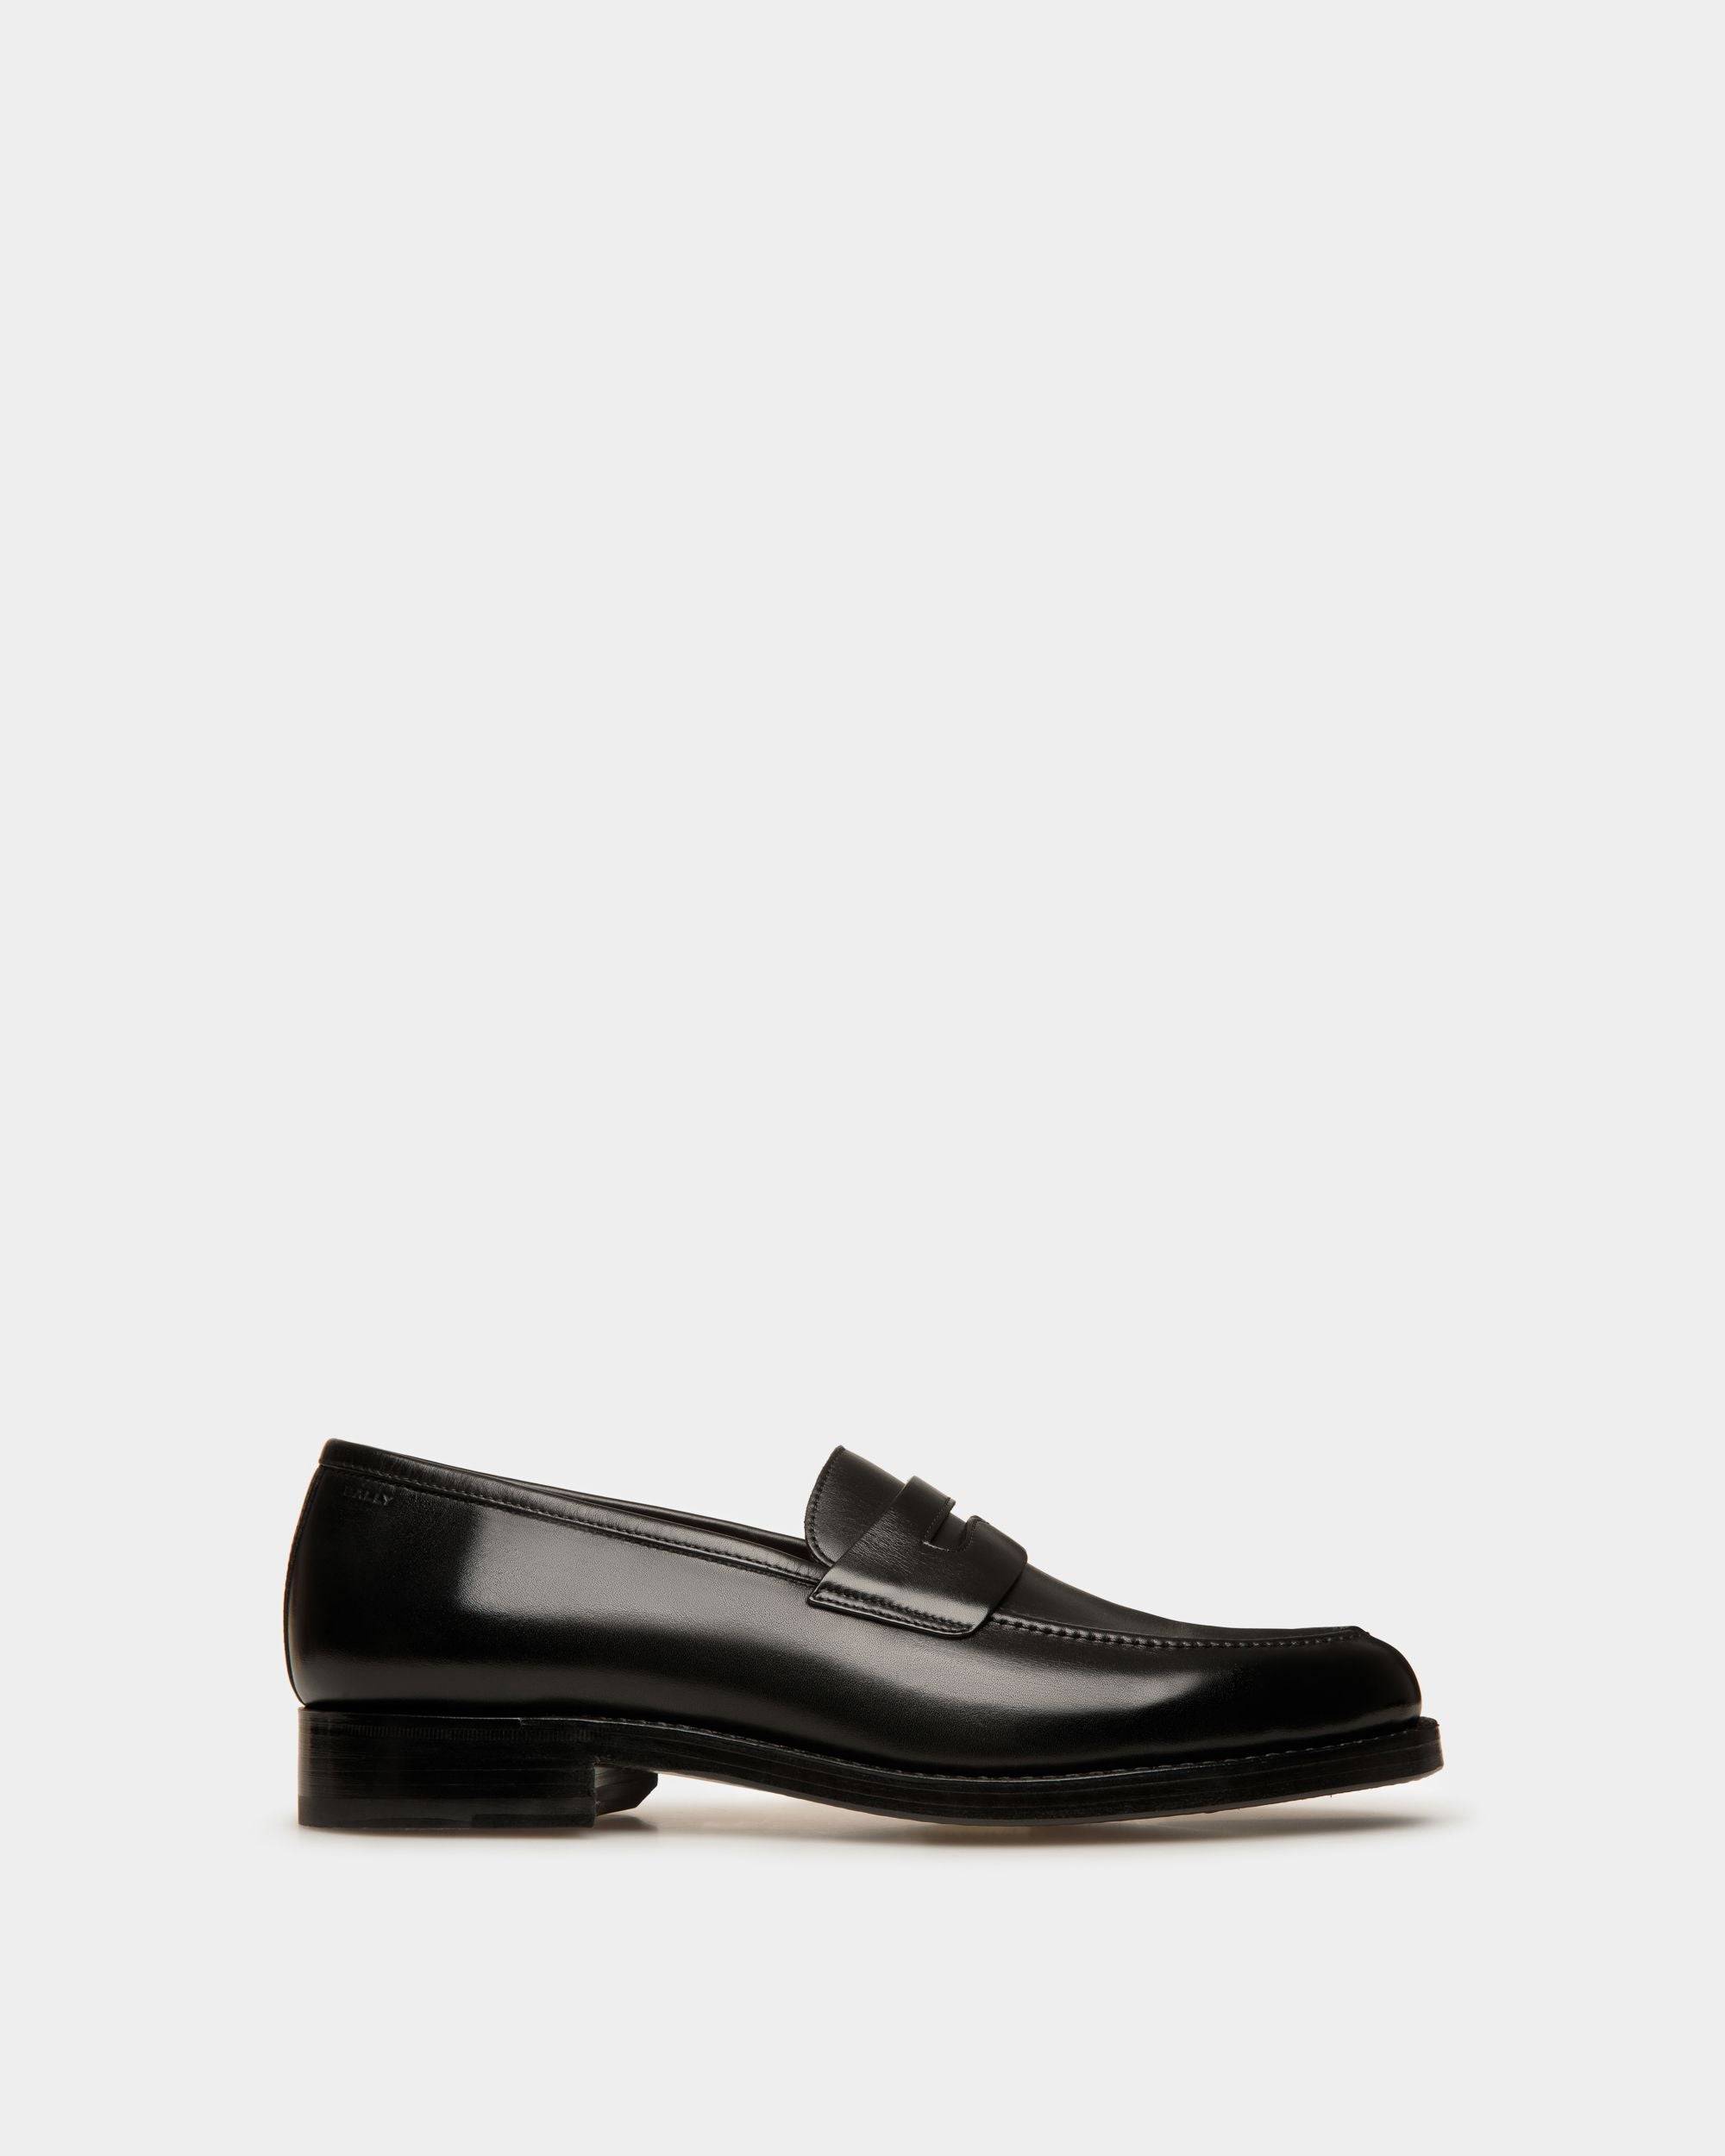 Men's Schoenen Loafer In Black Leather | Bally | Still Life Side